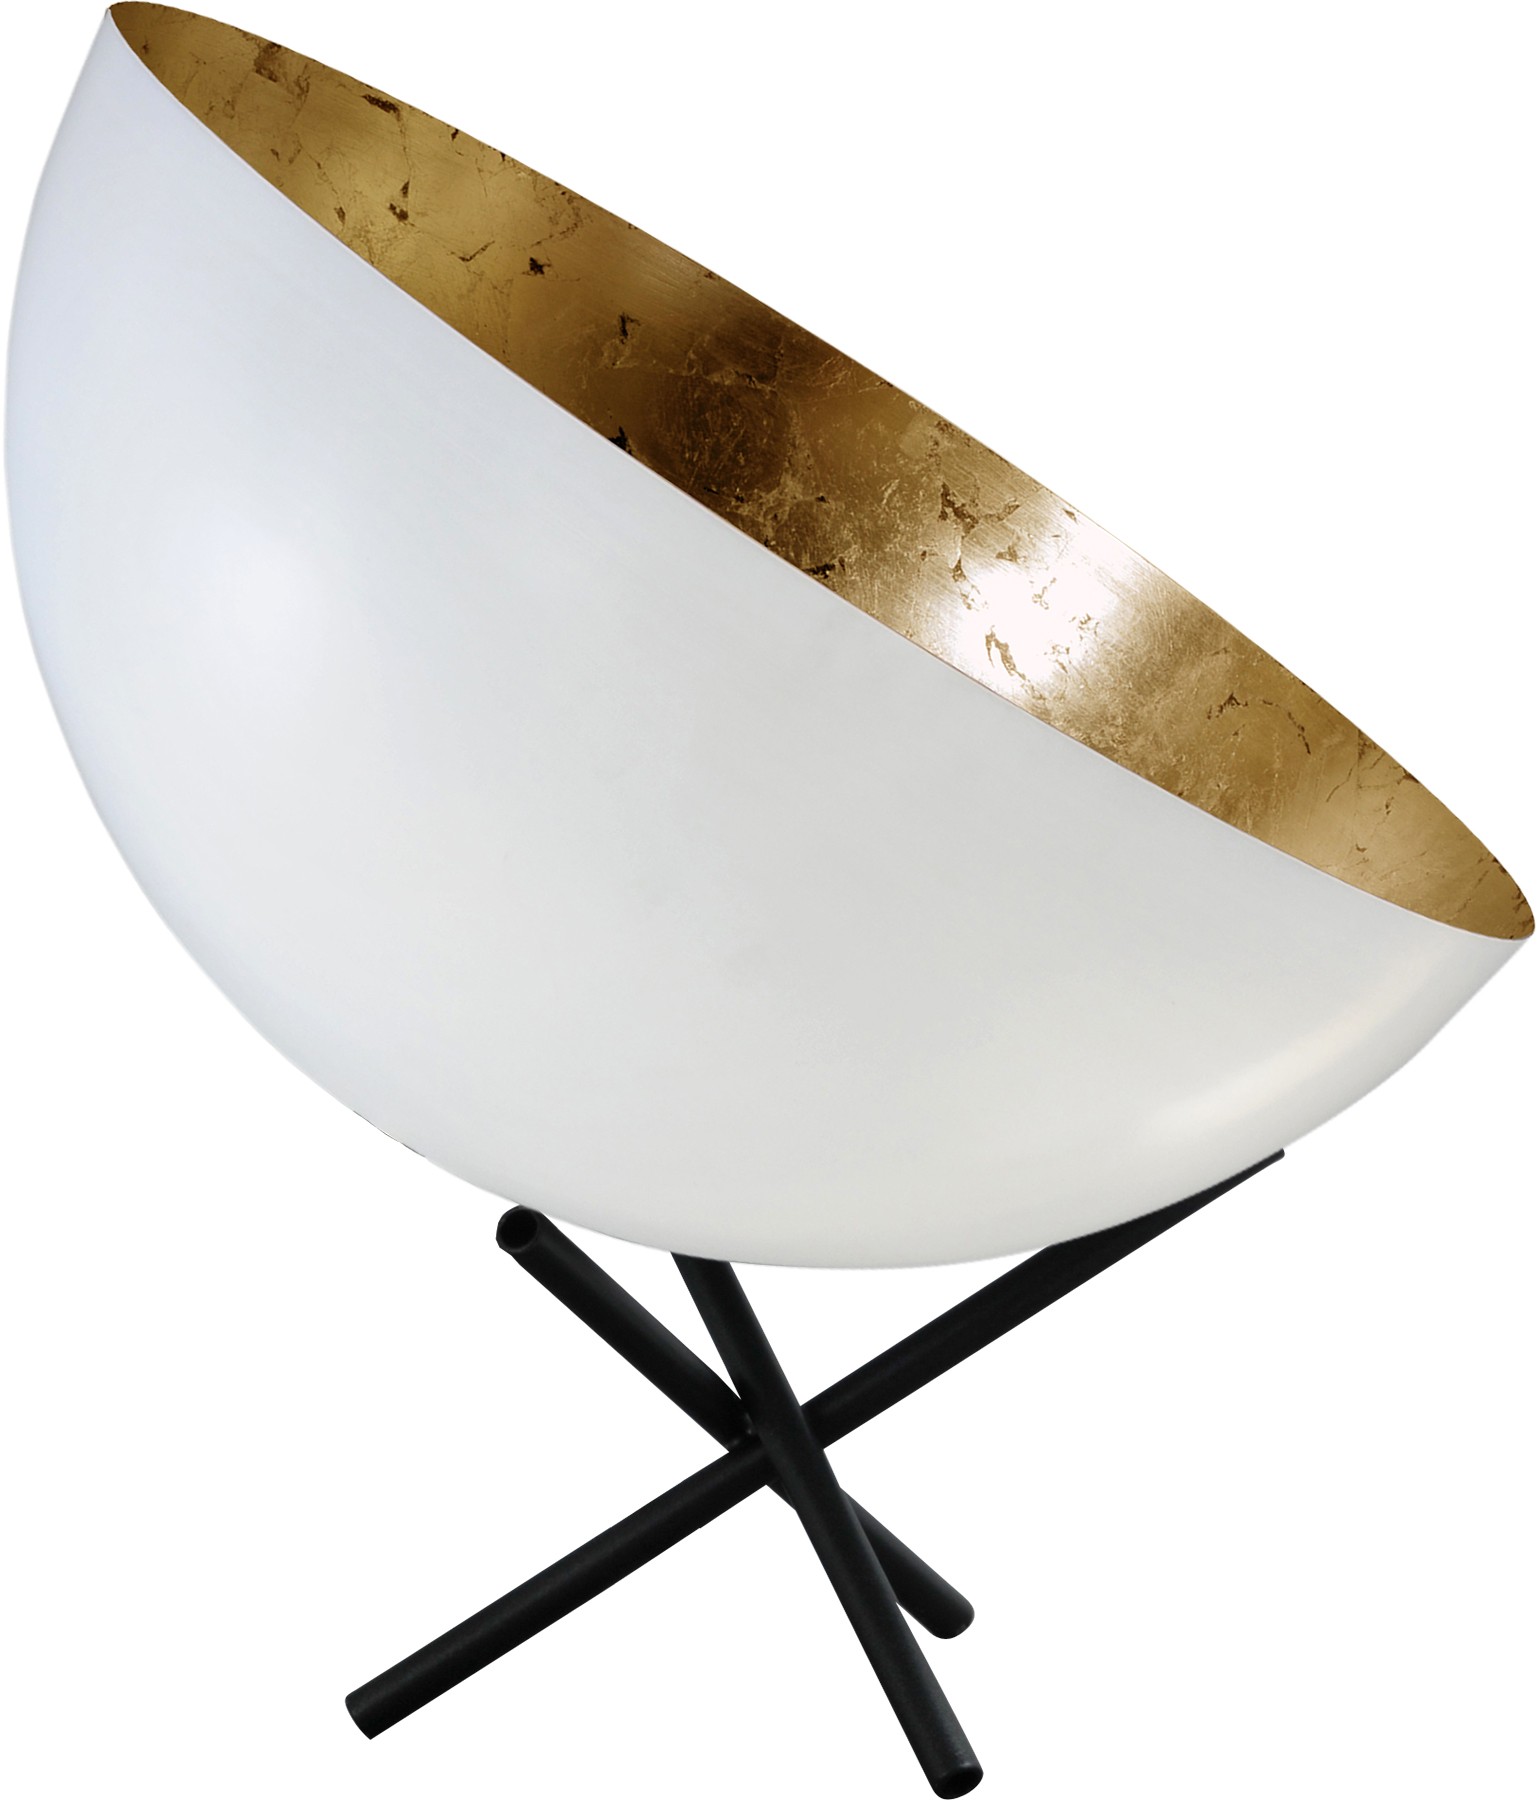 Stehleuchte/Strahler gold-weiß, Gestell schwarz, Industrielampe/ Retro-style, Schirm-Ø: 40 cm